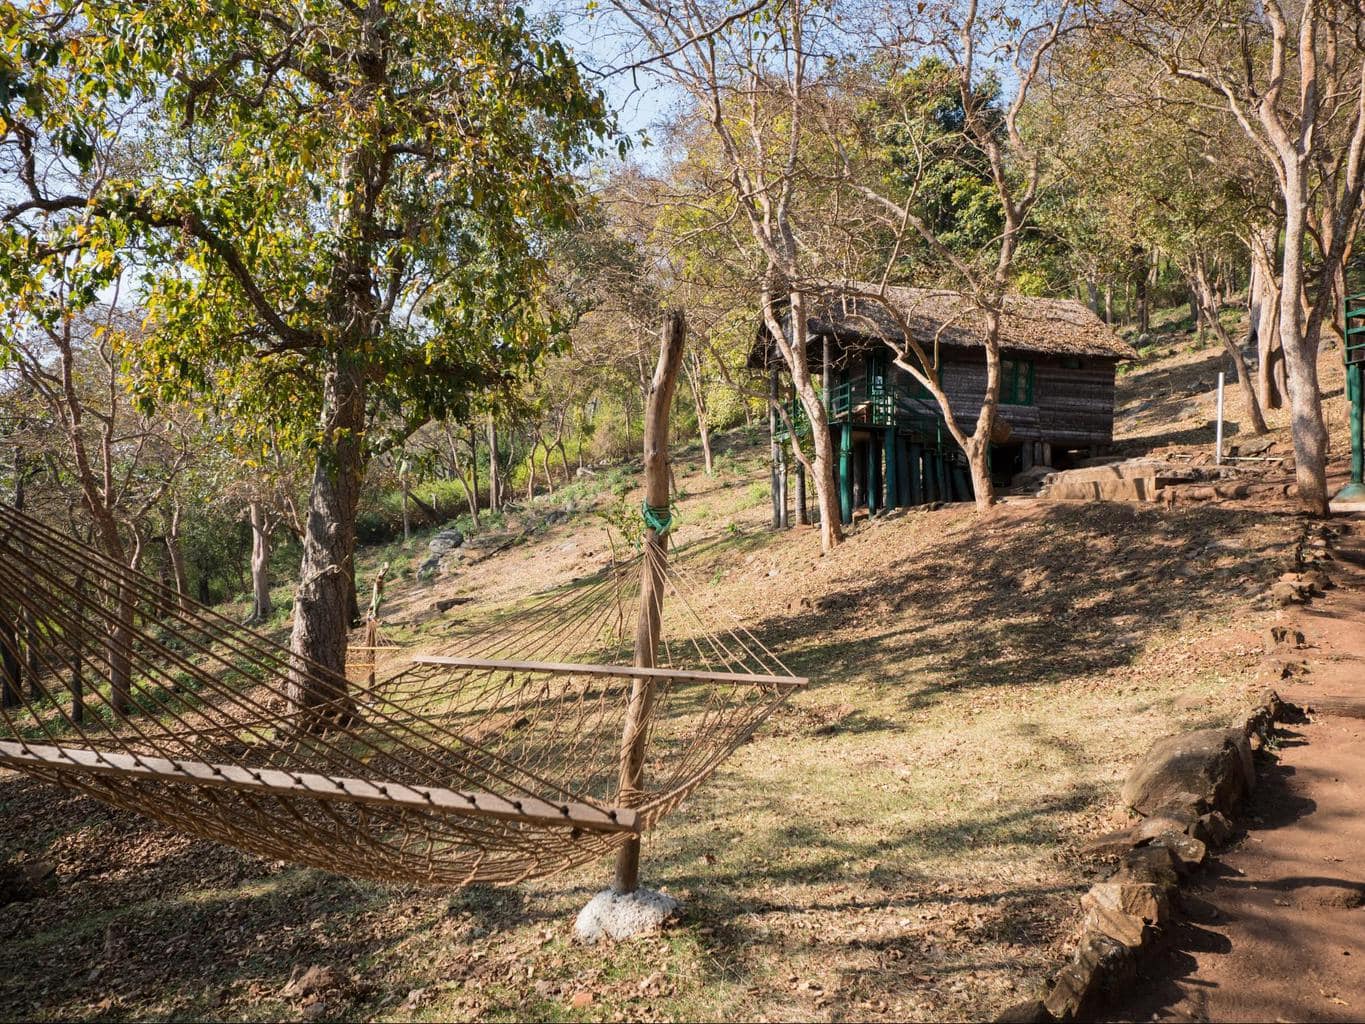 K Gudi tented camp and log cabins